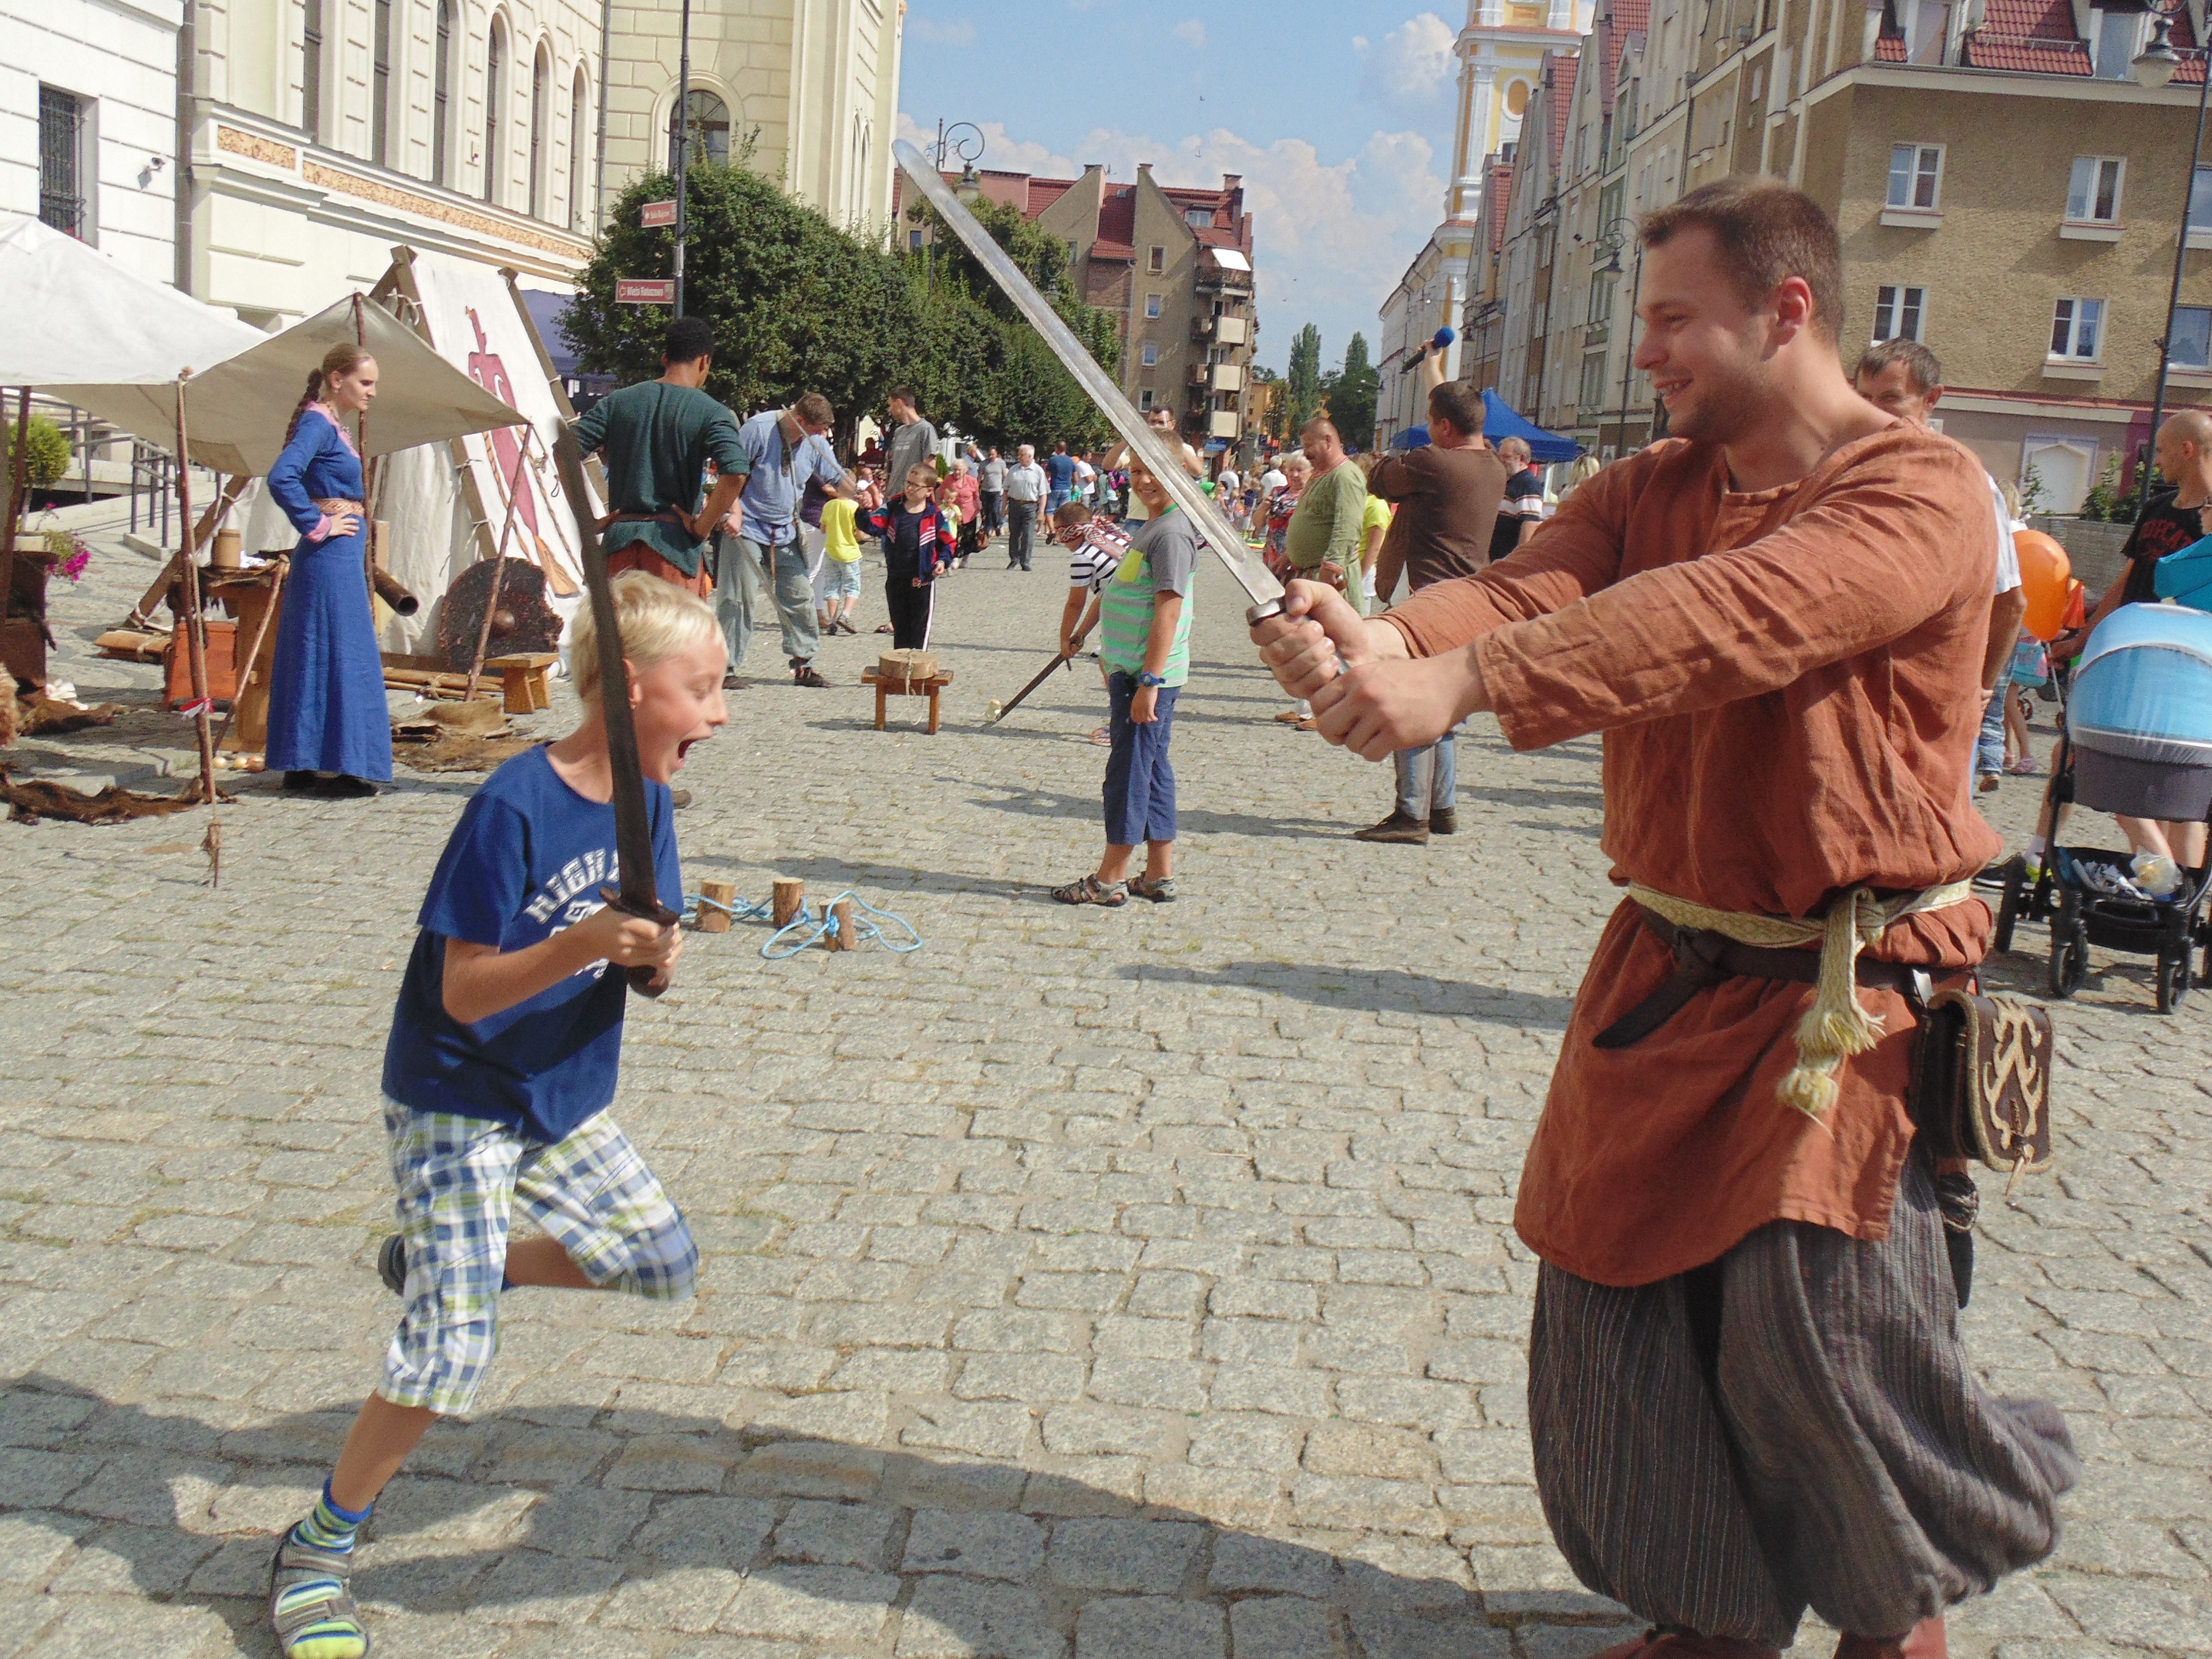 GŁOGÓW. Wojowie, miecze – w 906. rocznicę obrony grodu (FOTO)